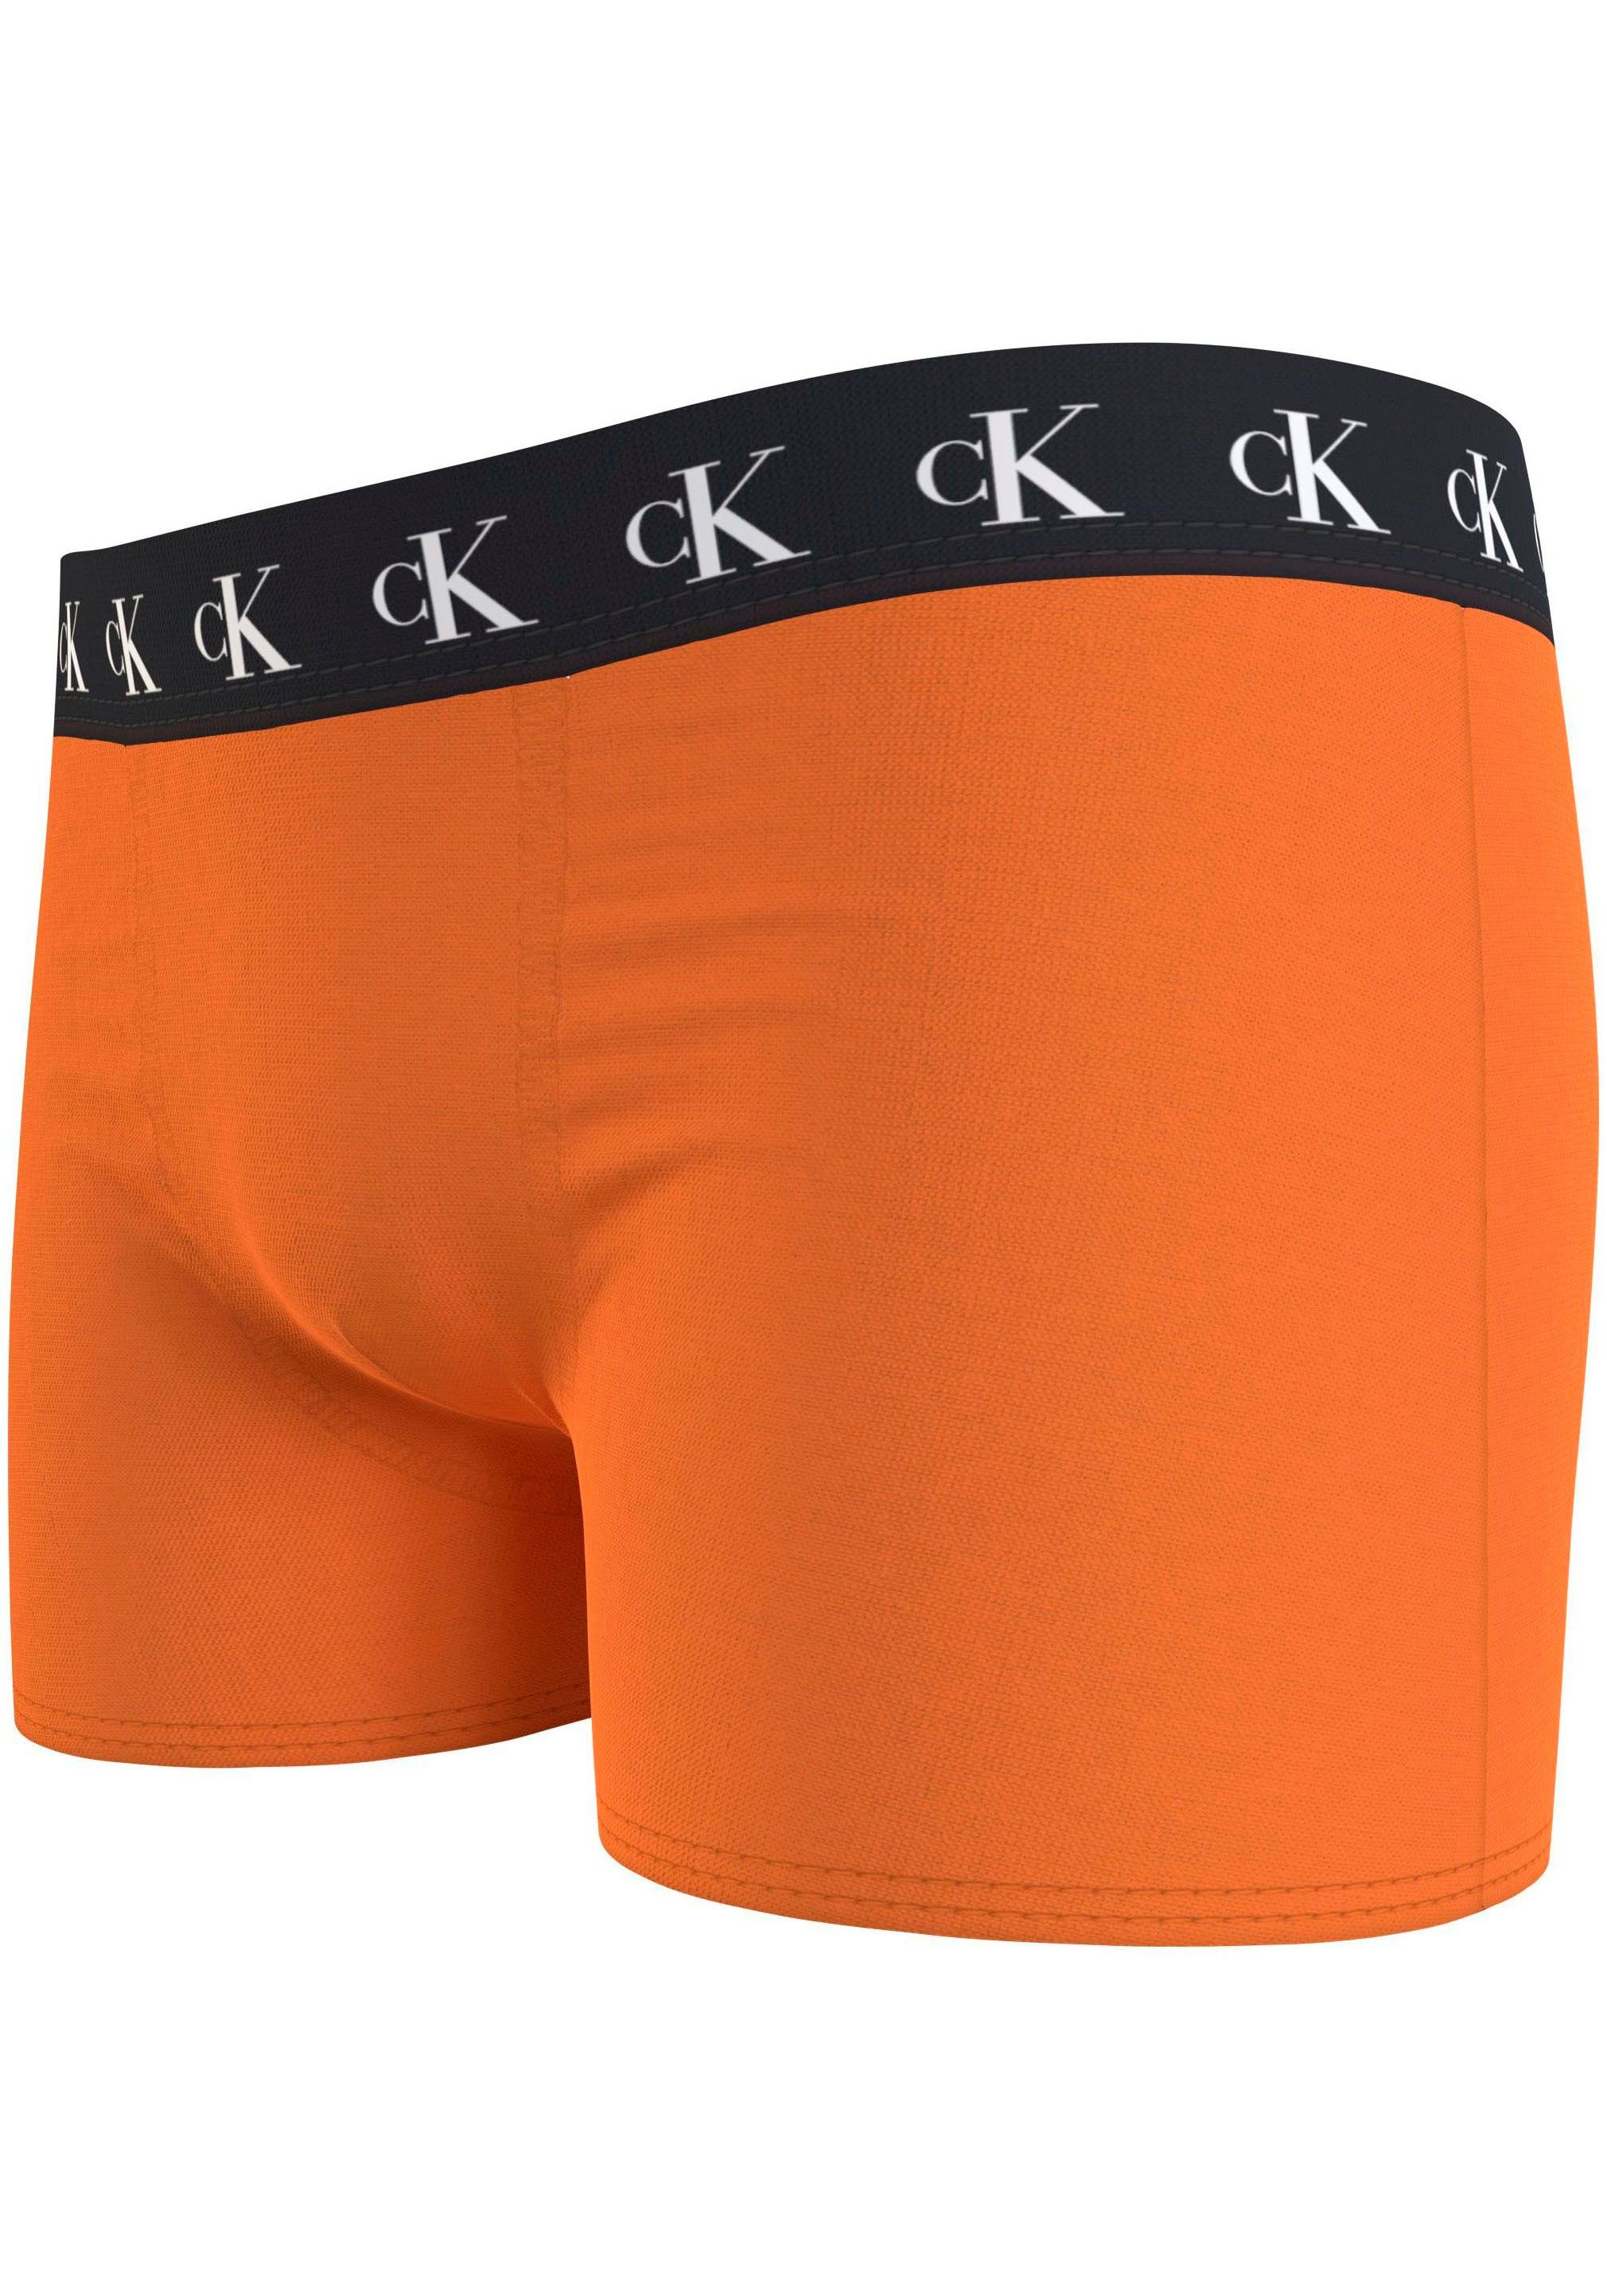 Underwear mit Warpedprint/Vibrantorange/Tarpsblue Slip TRUNK 3PK Markenlabel (Packung, am Klein Calvin Bund 3er-Pack) Calvin Klein